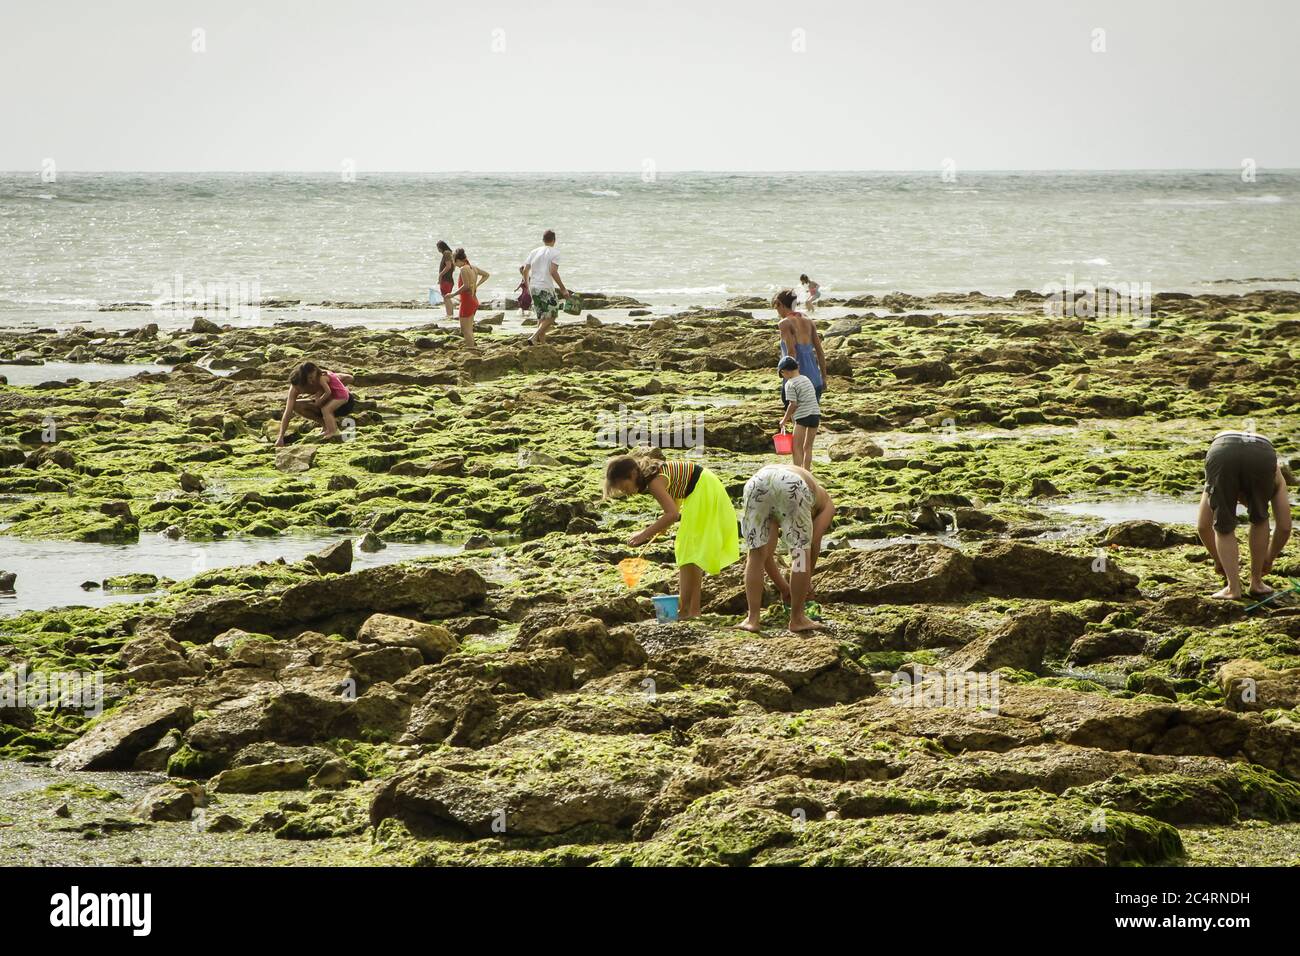 Peche un pied o pesca a piedi per molluschi quando la marea è fuori su Ile de Oleron, un'isola al largo della costa occidentale della Francia Foto Stock